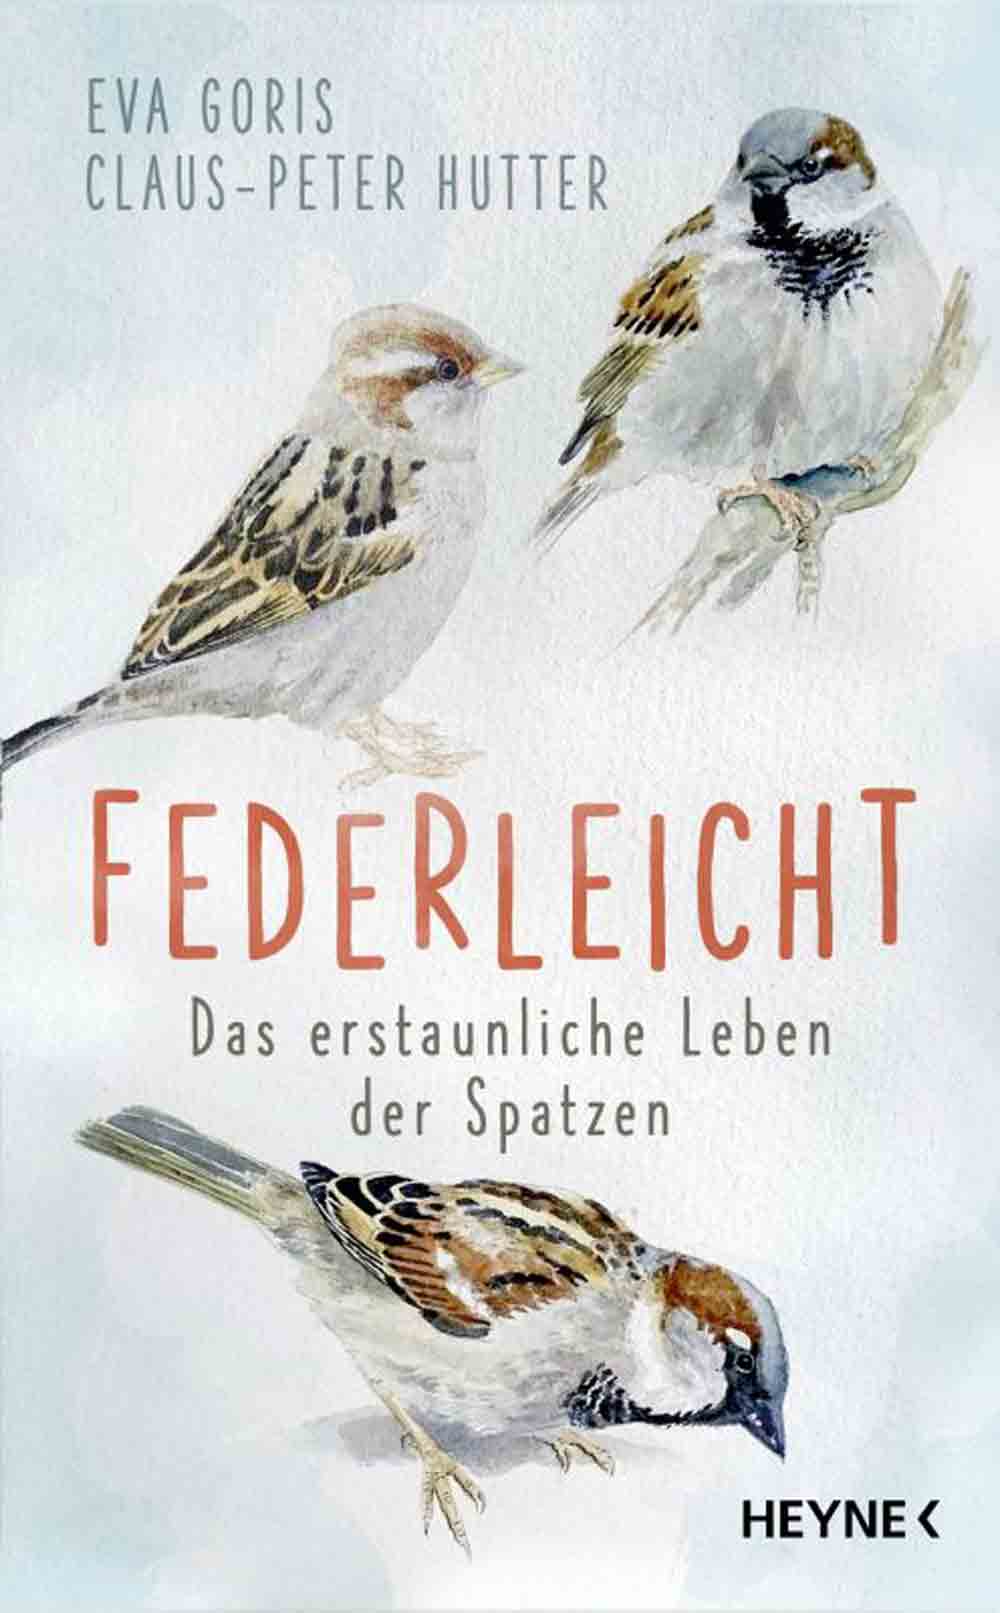 Lesetipps für Gütersloh, Eva Goris und Claus Peter Hutter, »Federleicht«, das erstaunliche Leben der Spatzen